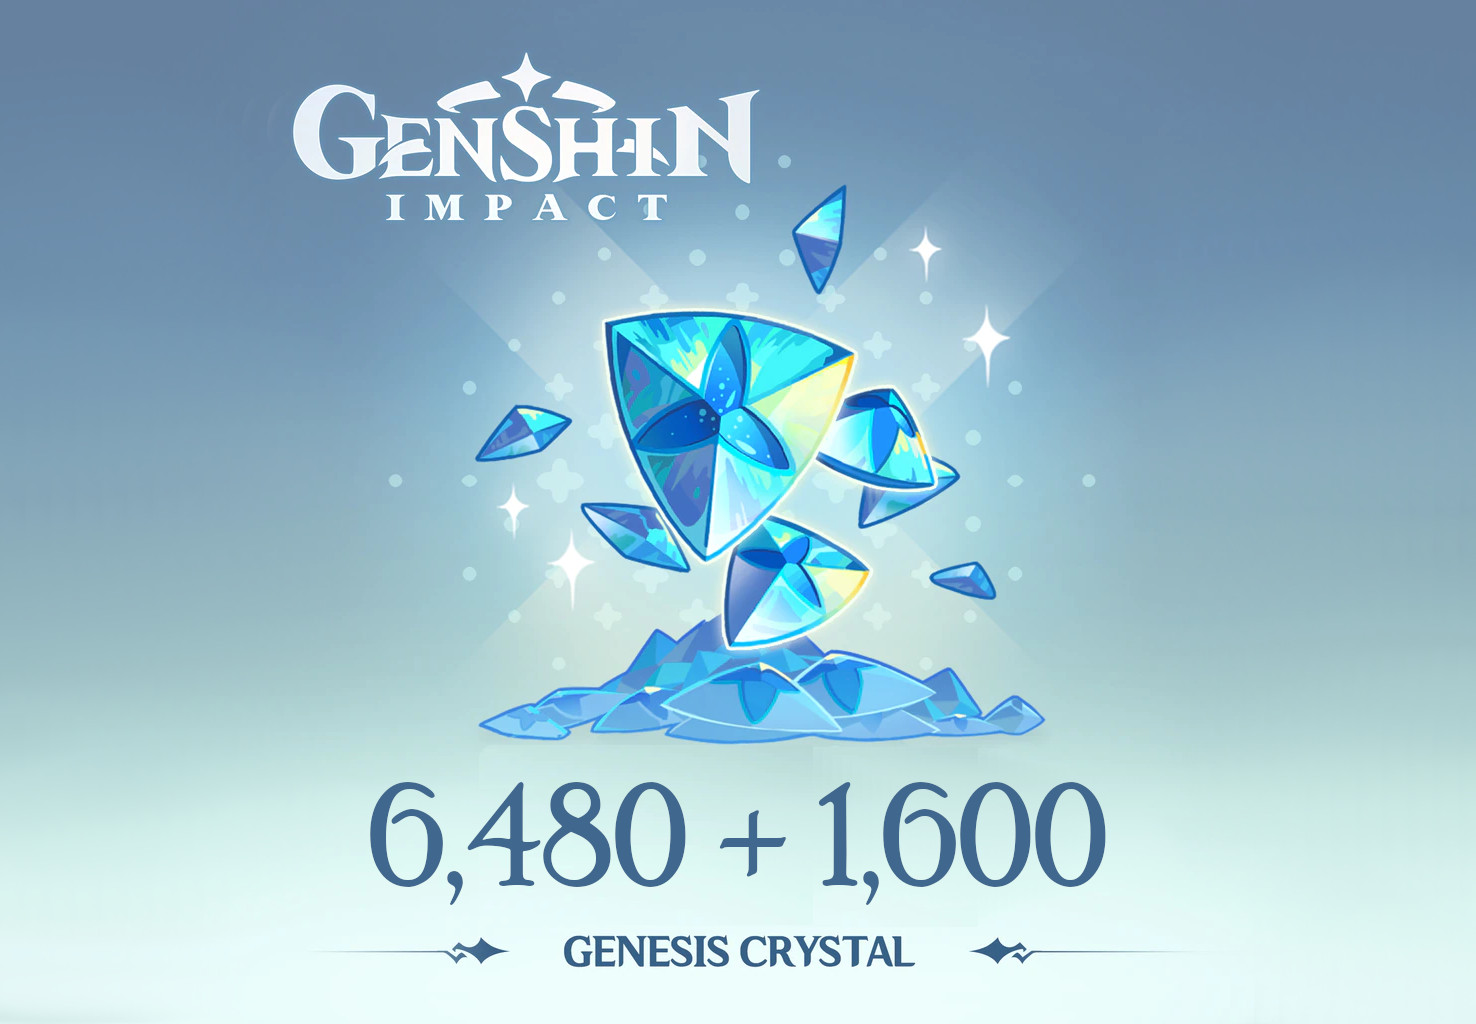 (107.29$) Genshin Impact - 6,480 + 1,600 Genesis Crystals Reidos Voucher